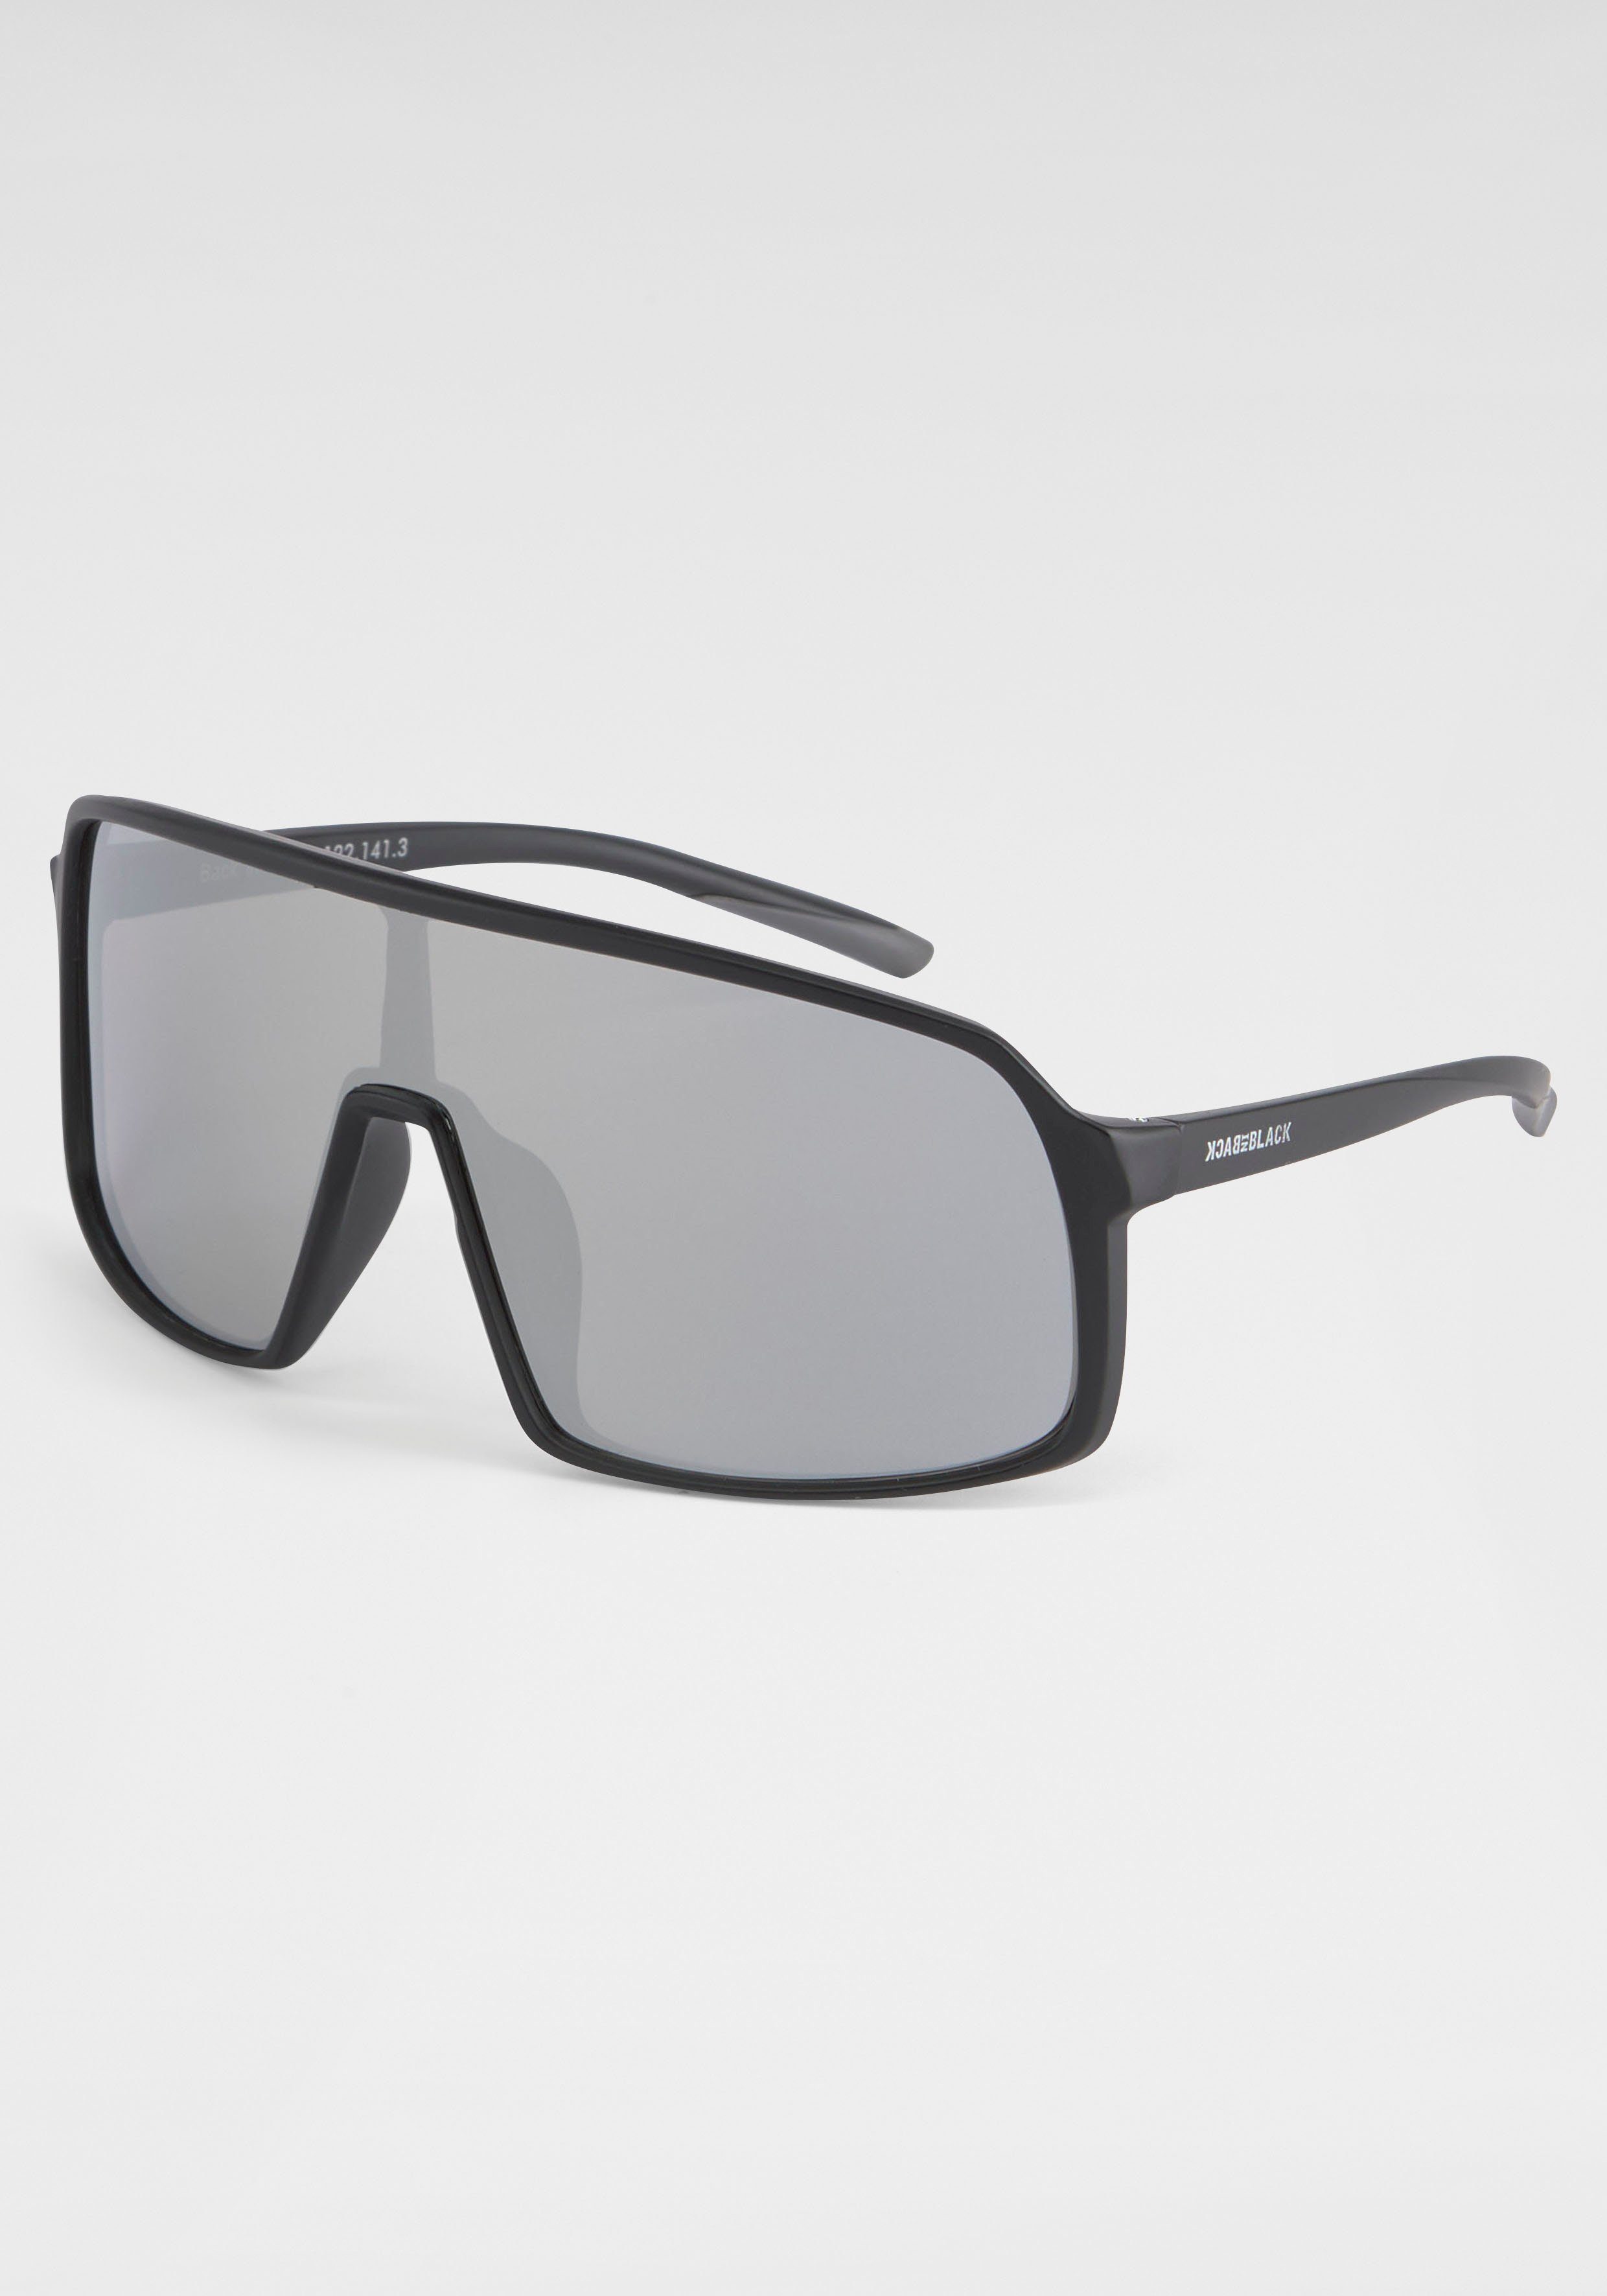 Sonnenbrille Eyewear schwarz-silber BACK Gläser BLACK große IN